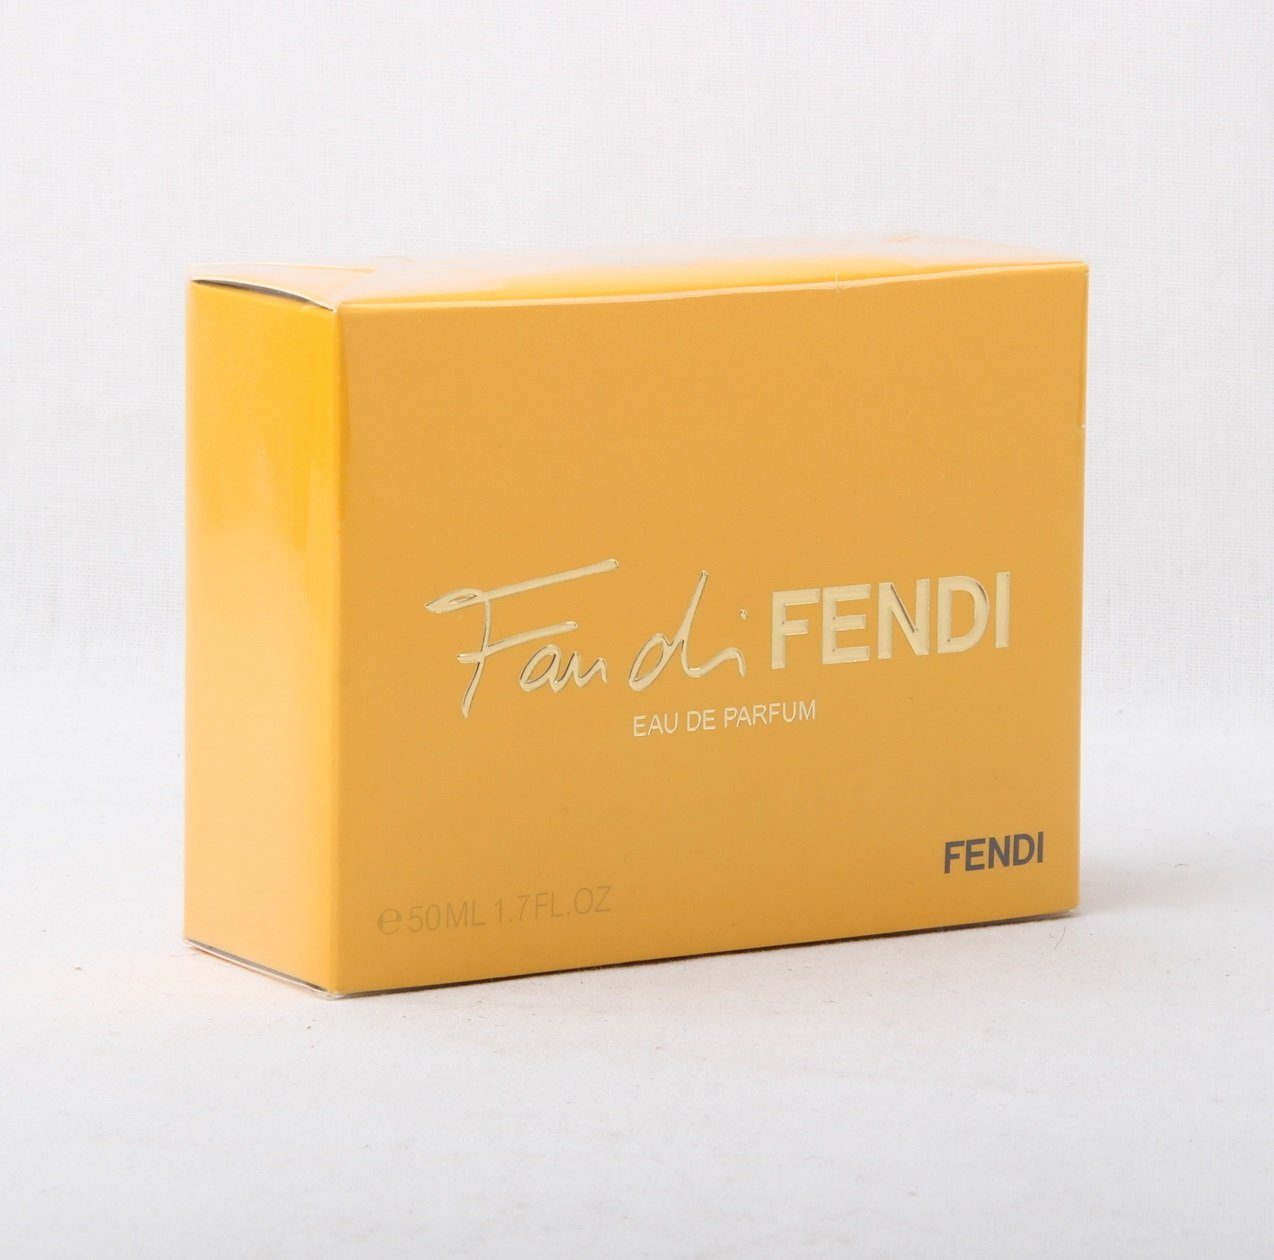 FENDI Eau de Parfum Fan di Fendi Eau de Parfum 50ml